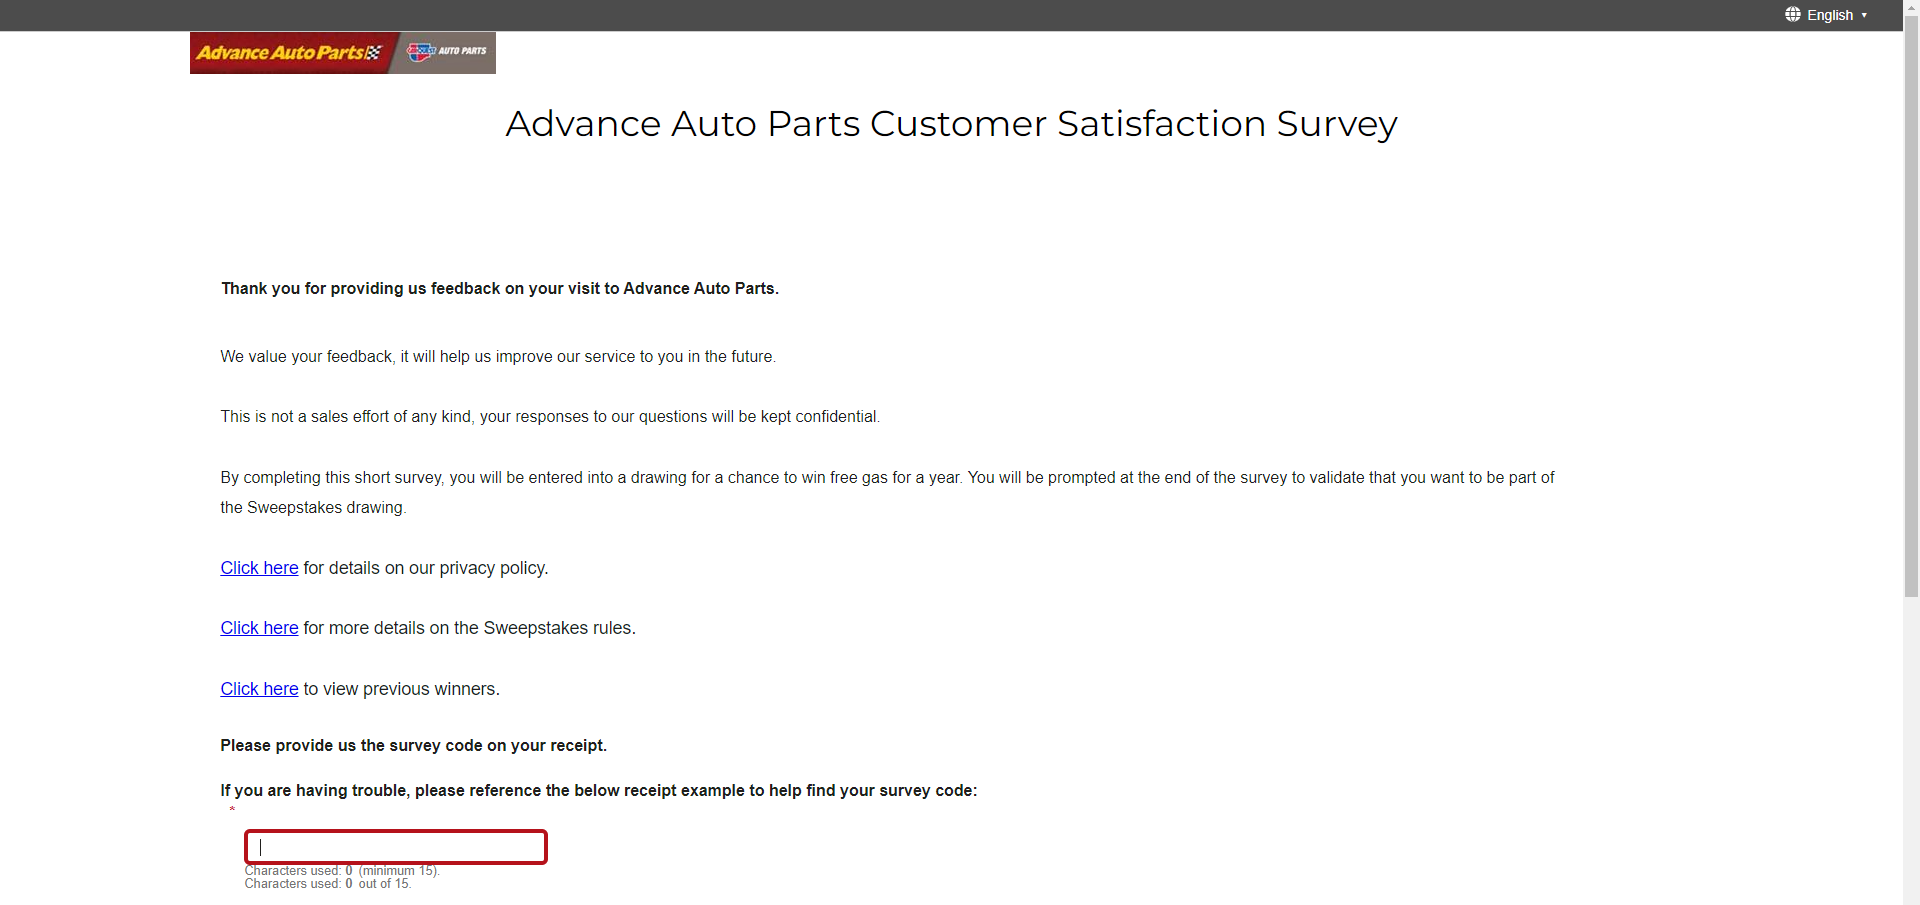 advanceautoparts.com/survey